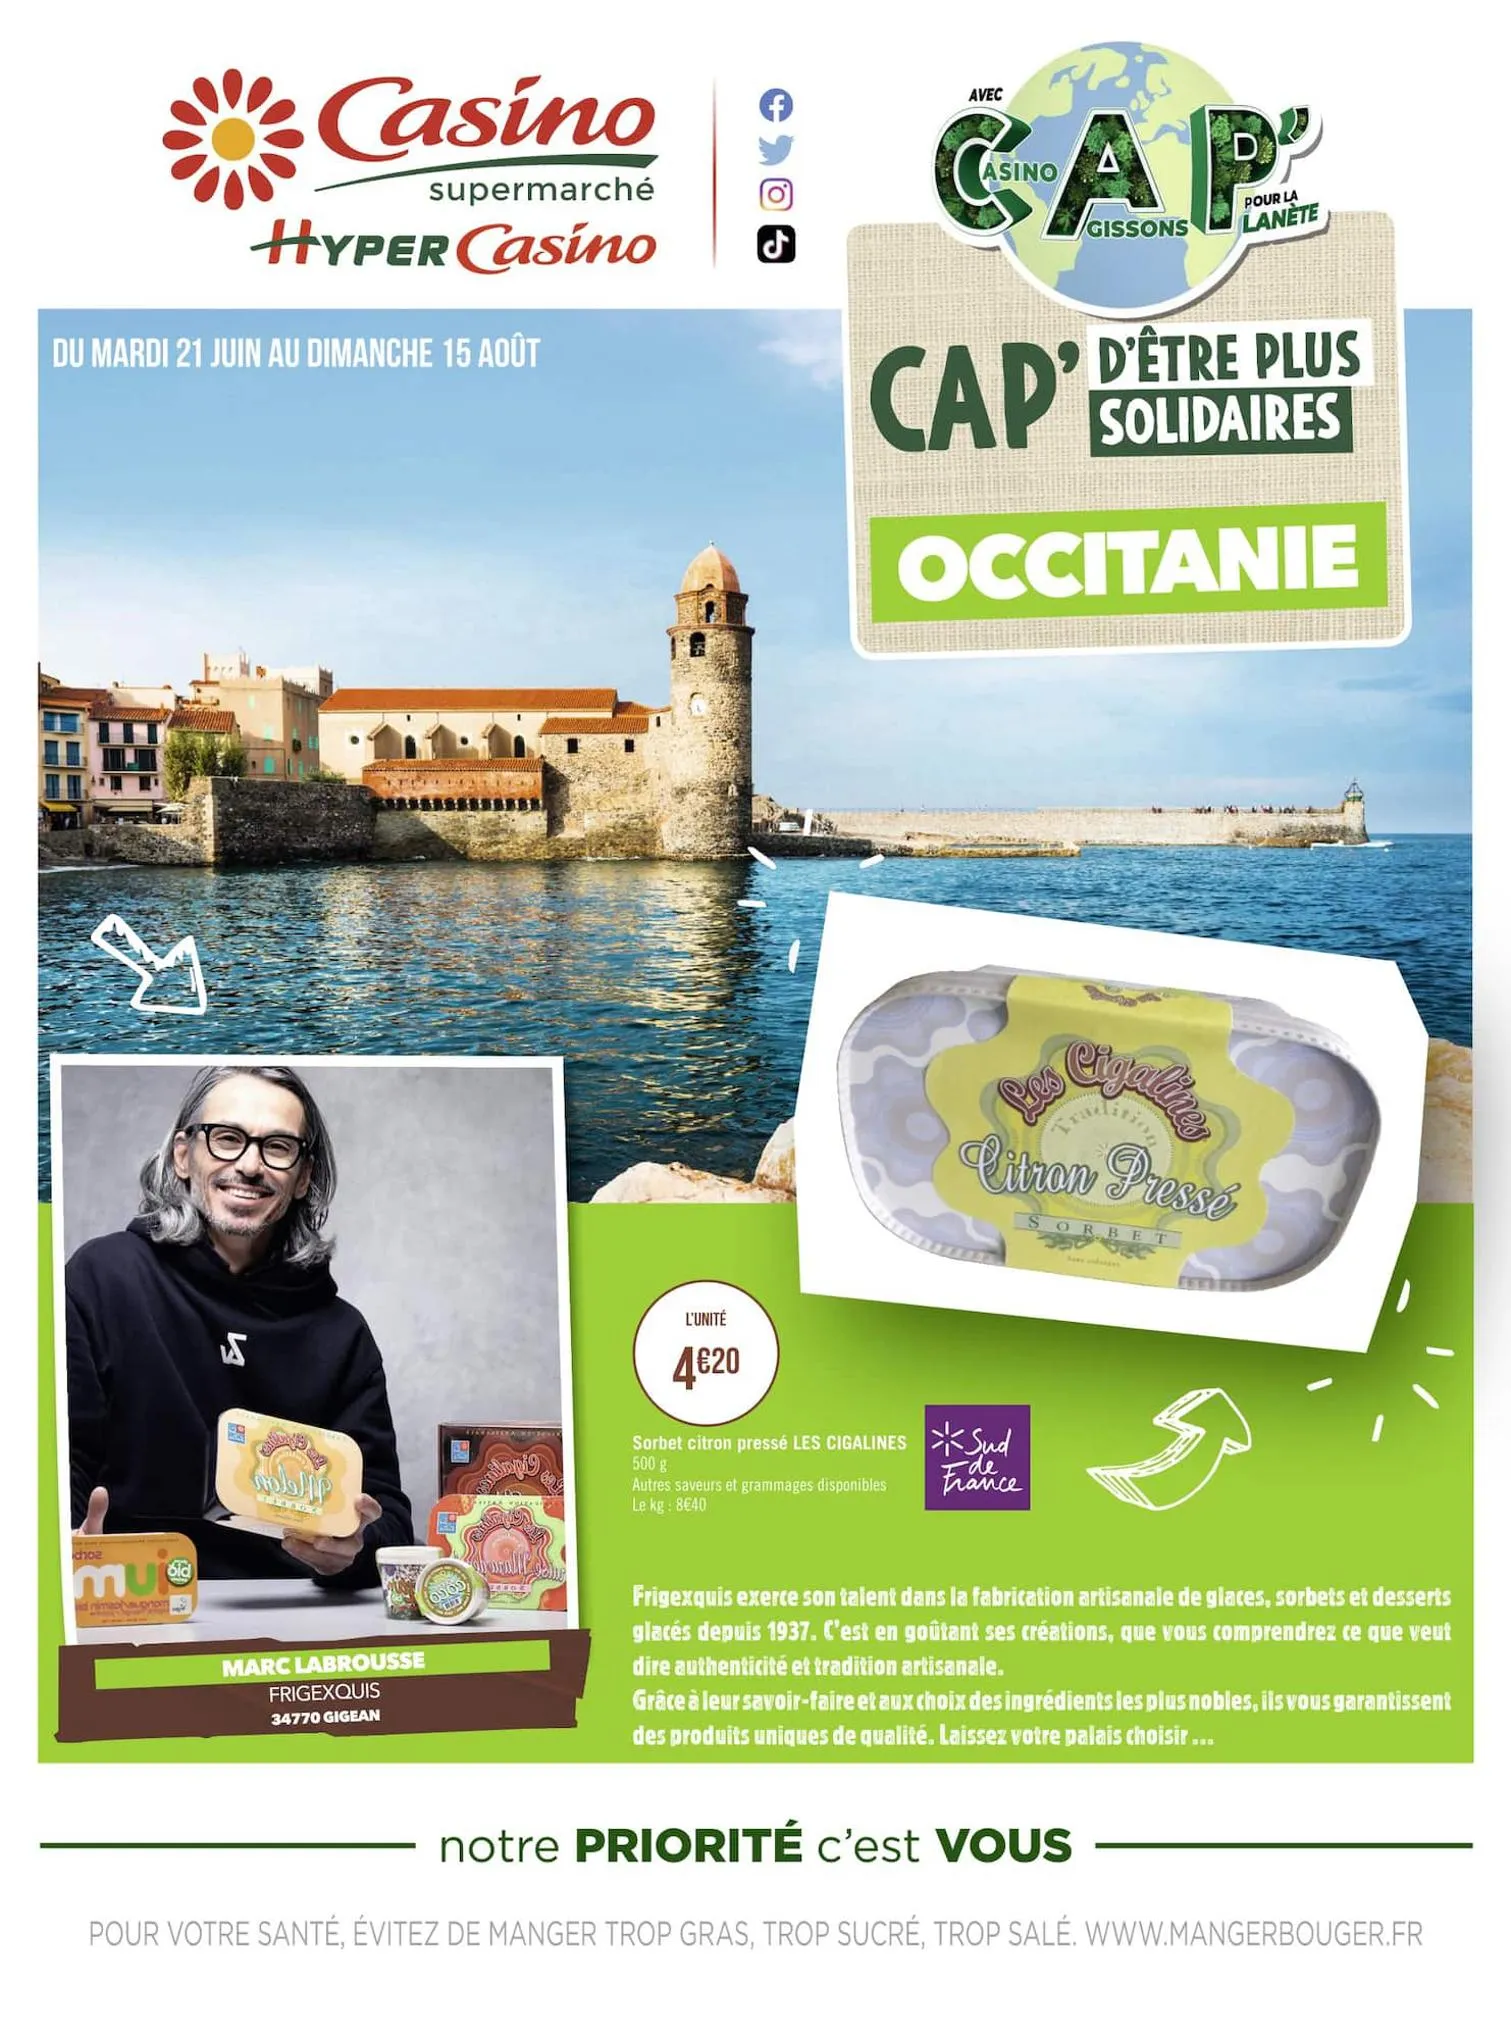 Catalogue CAP' d'être plus solidaires : Occitanie, page 00001